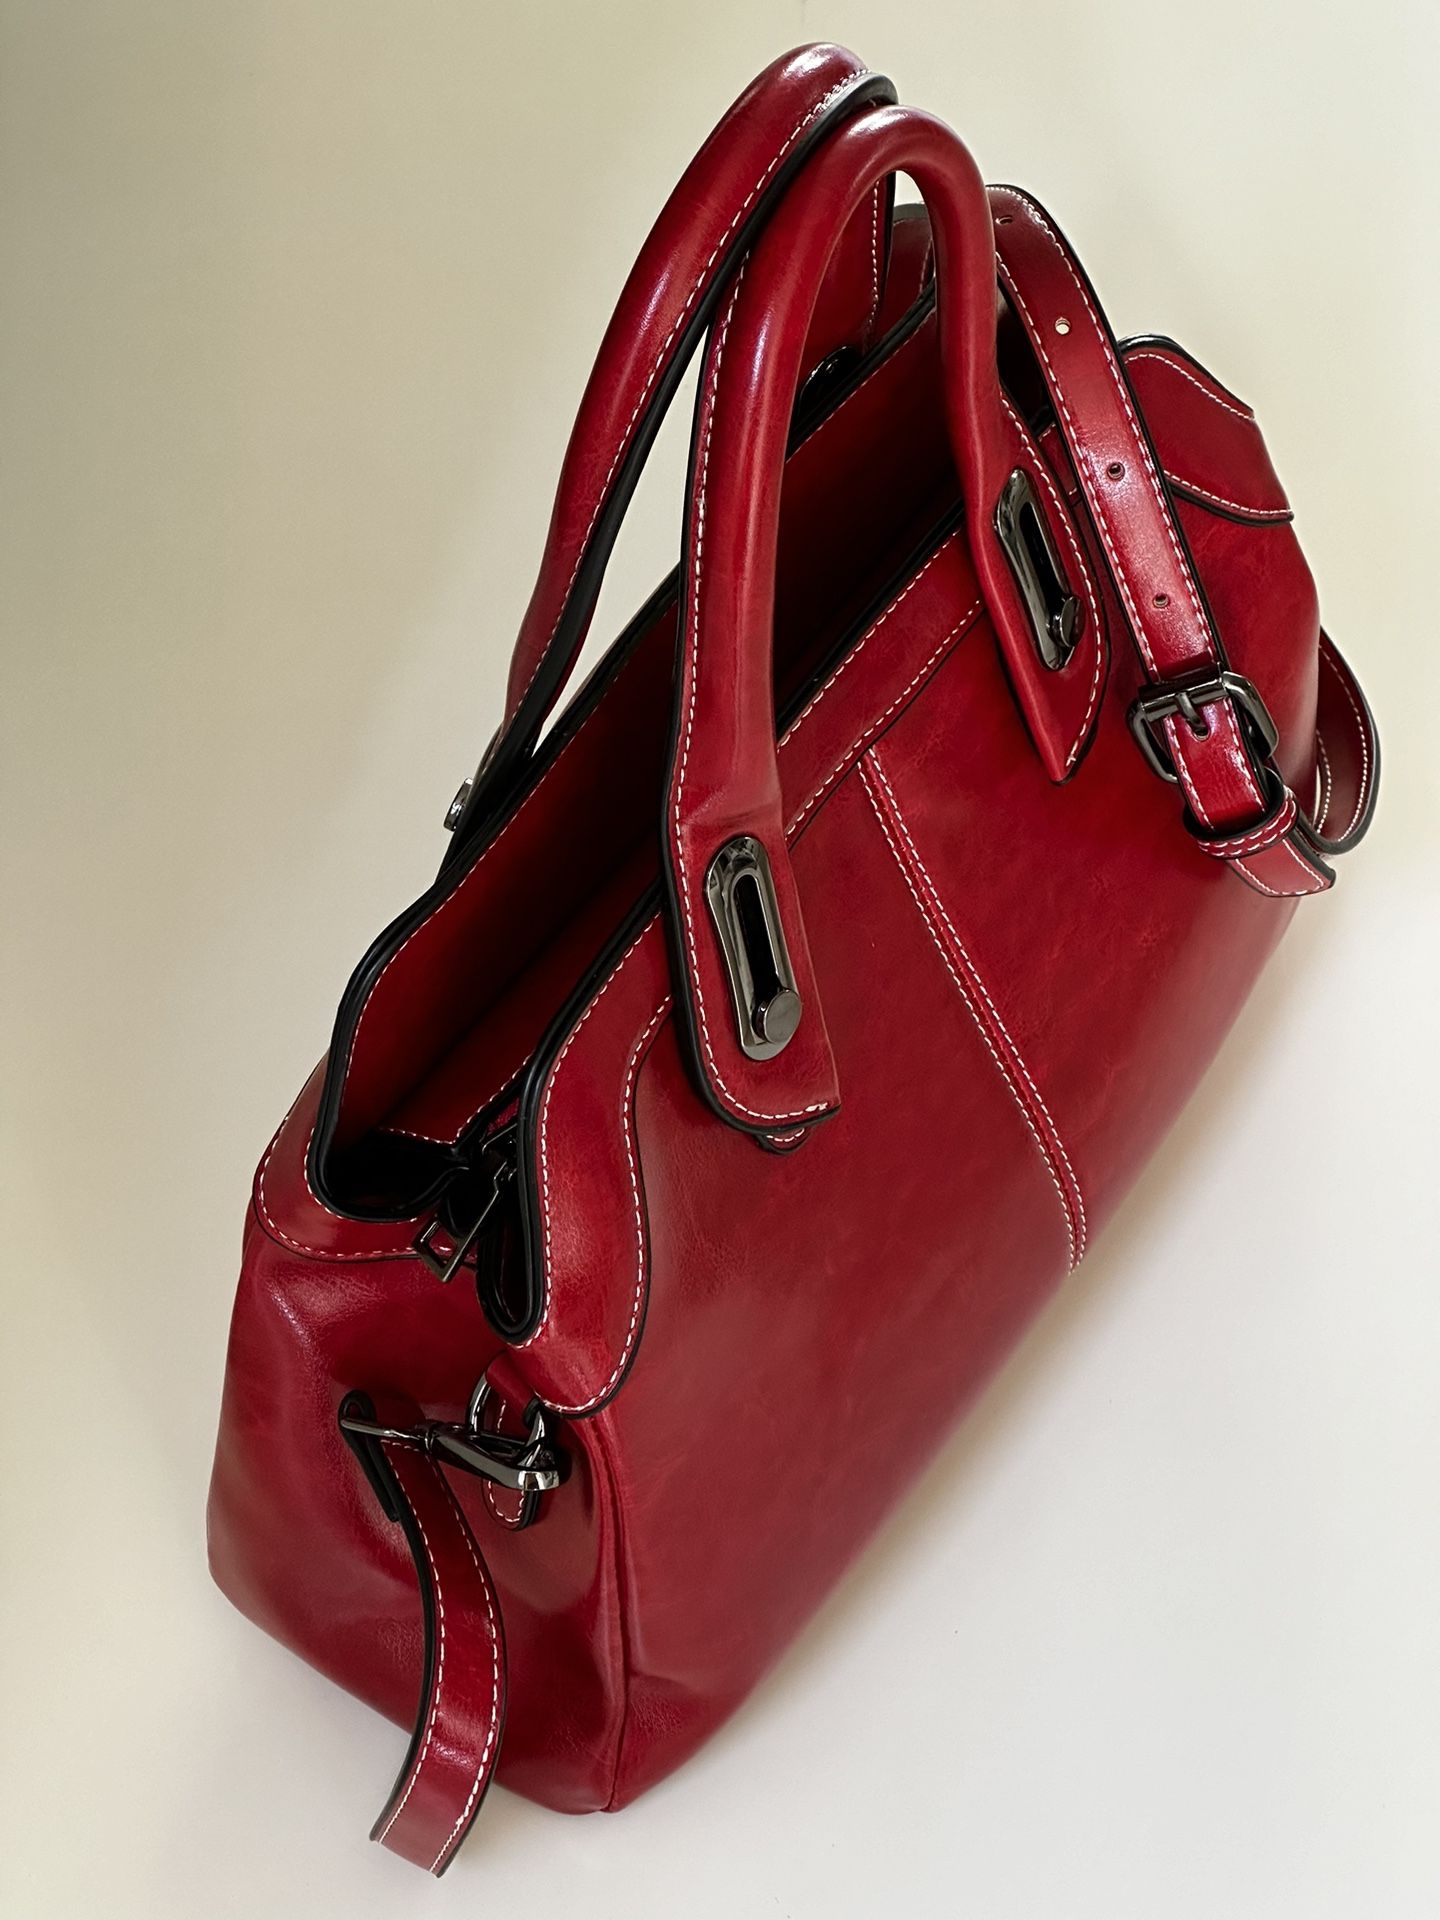 QUQUITO Large Capacity Handbag for Women Fashion Genuine Cow Leather Shoulder Bag Retro Crossbody Bags.